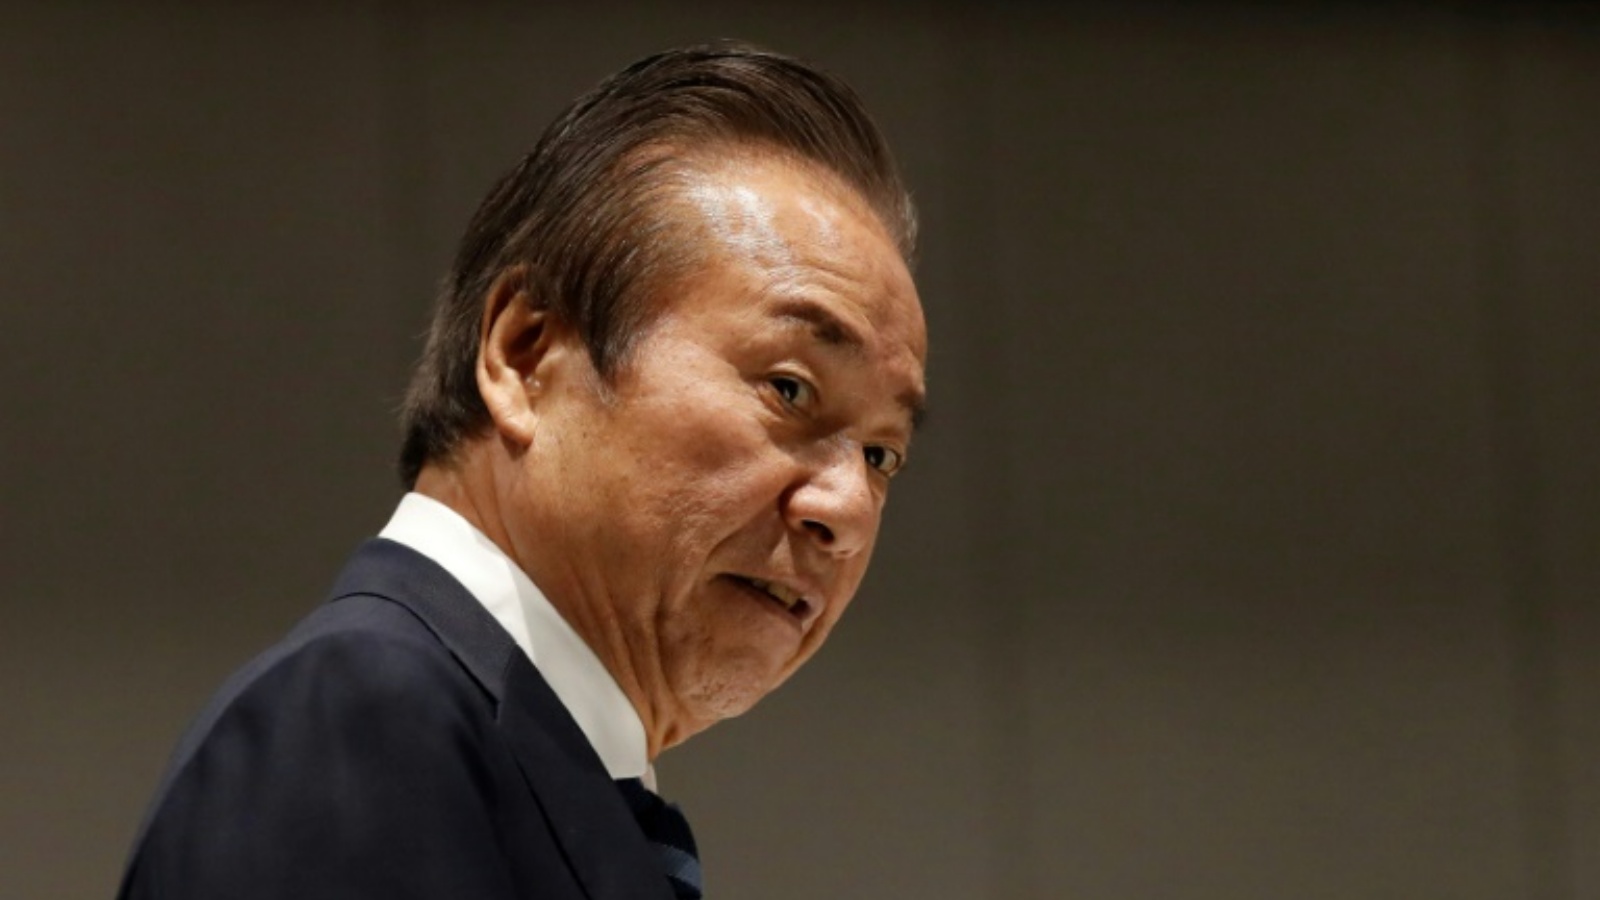 عمل هارويوكي تاكاهاشي في مجلس إدارة طوكيو 2020 منذ يونيو 2014